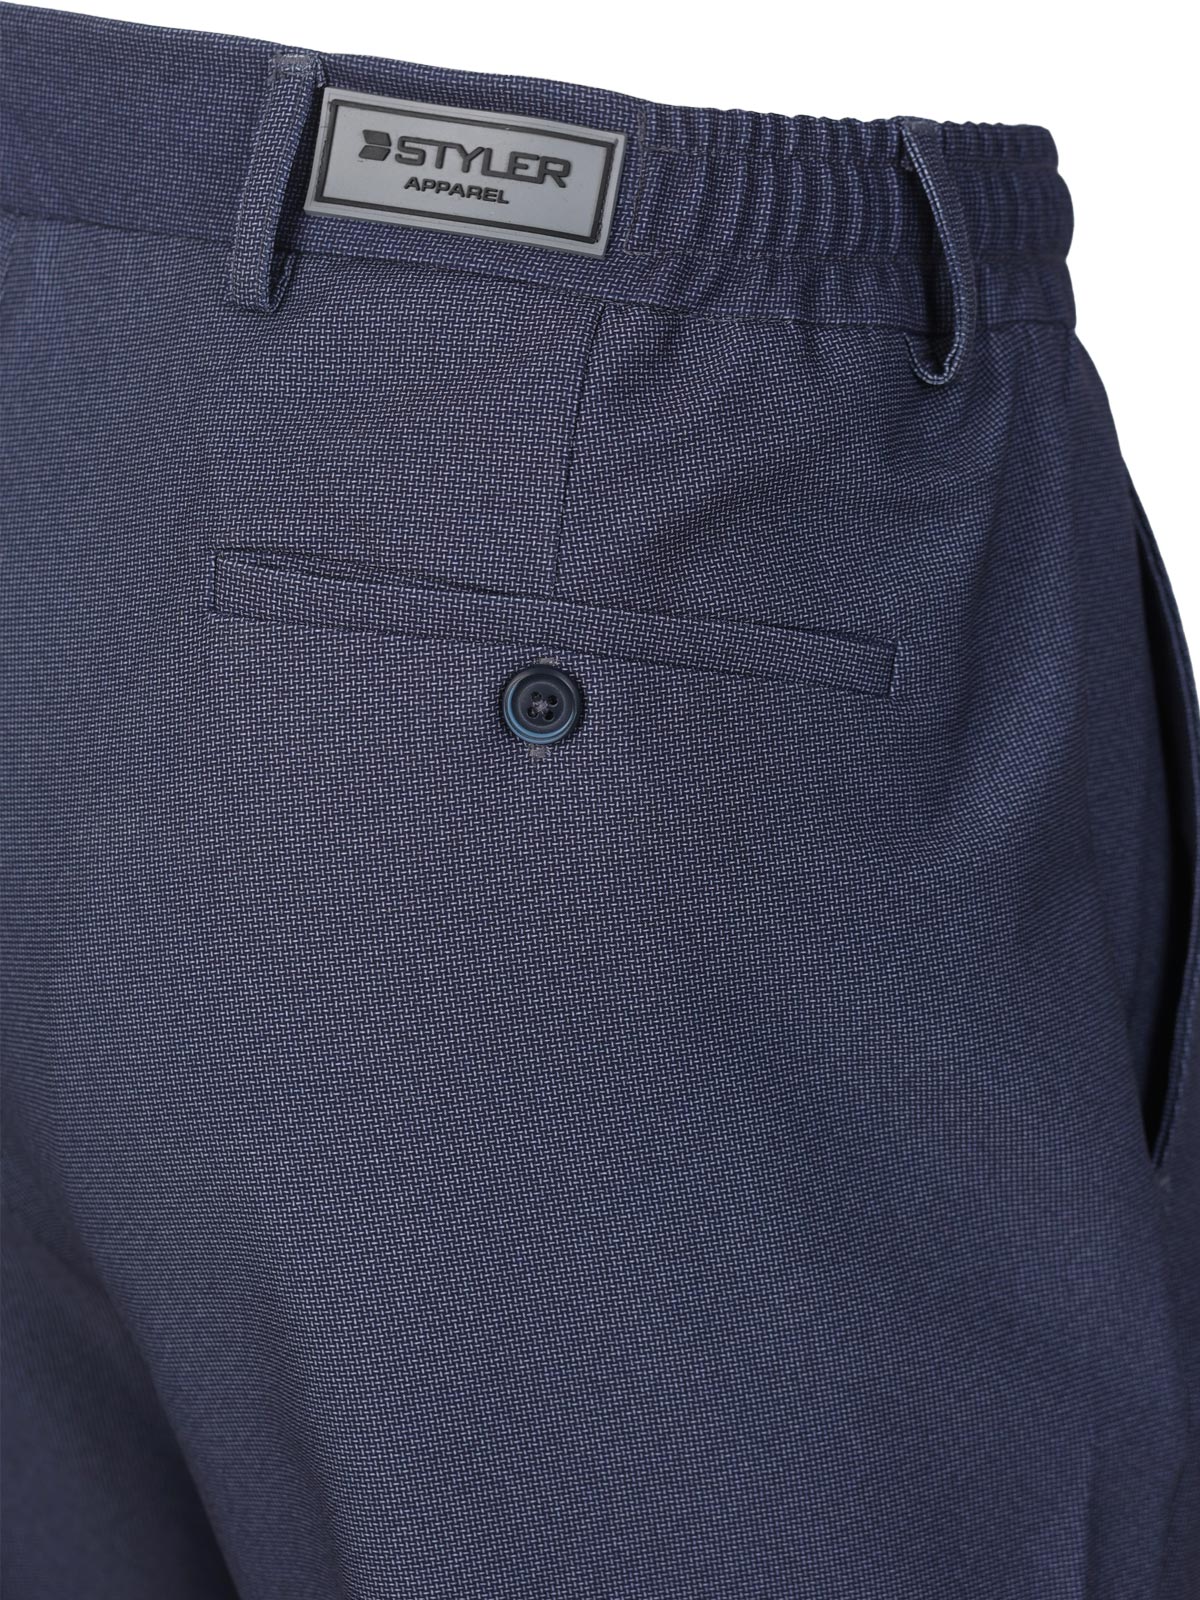 Σπορ κομψό παντελόνι σε μπλε χρώμα - 29014 € 55.12 img3